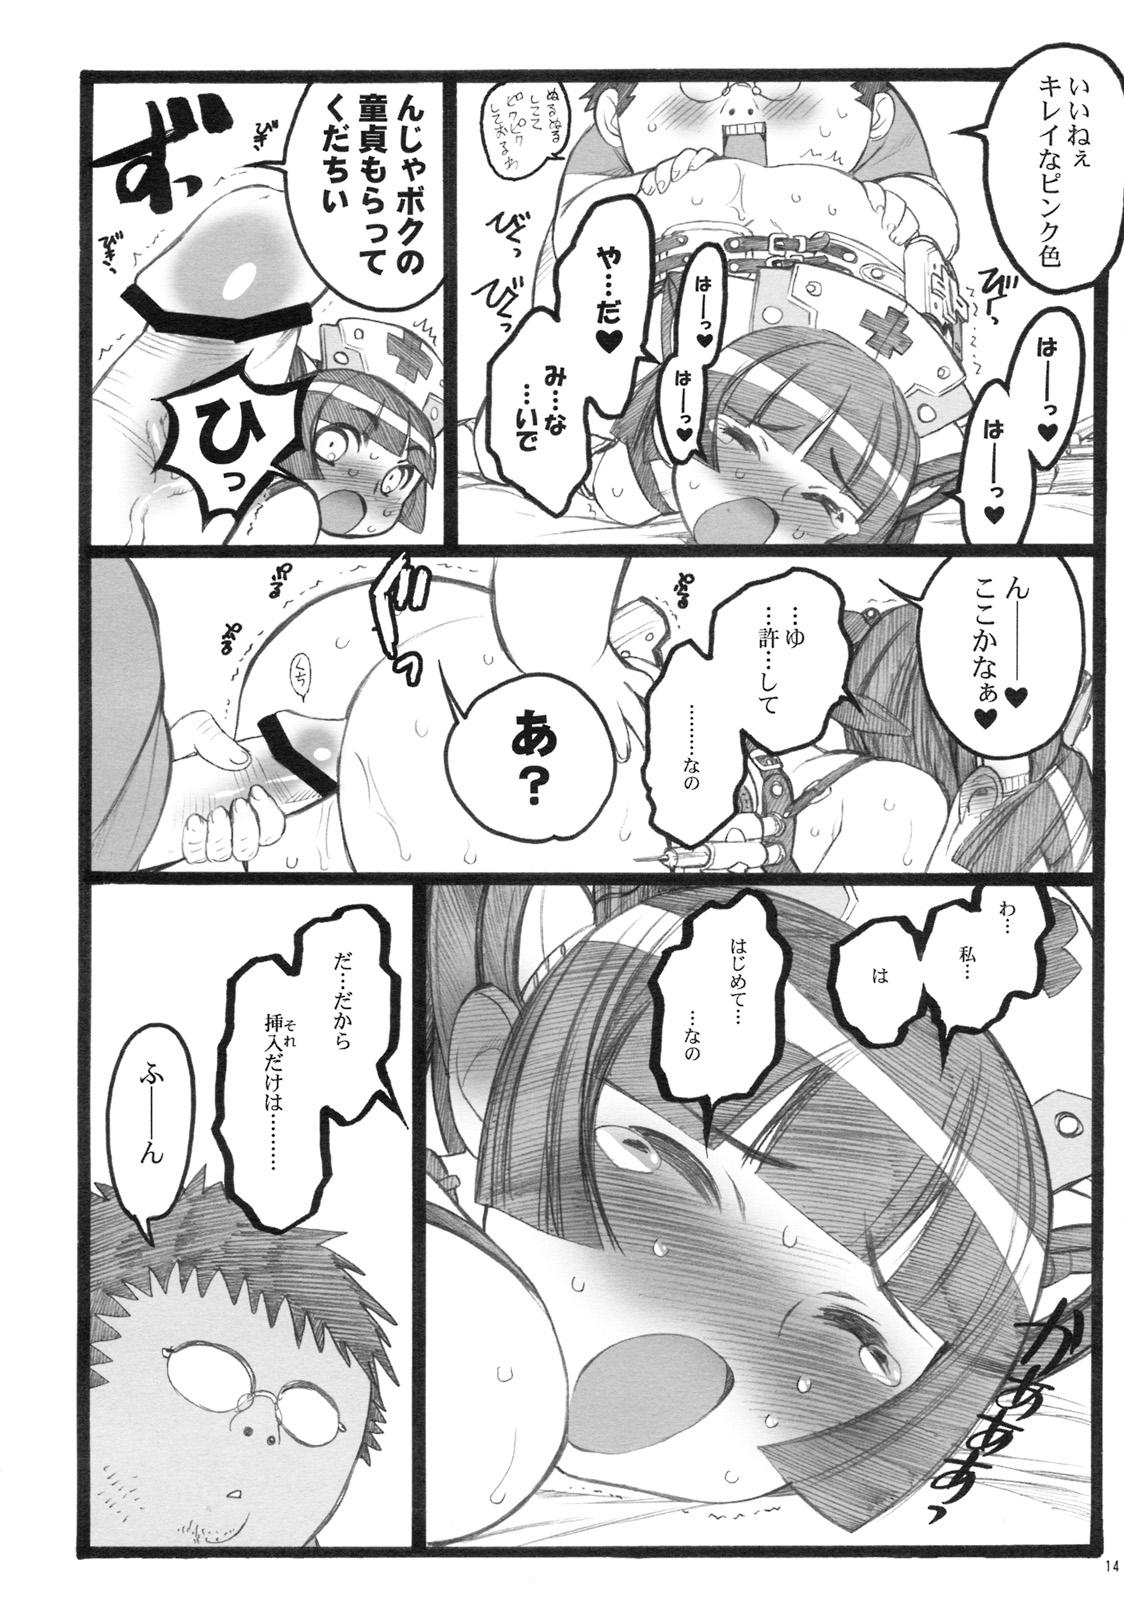 Esposa Hyper Nurse Pain Killer Kotone-chan Strip - Page 13